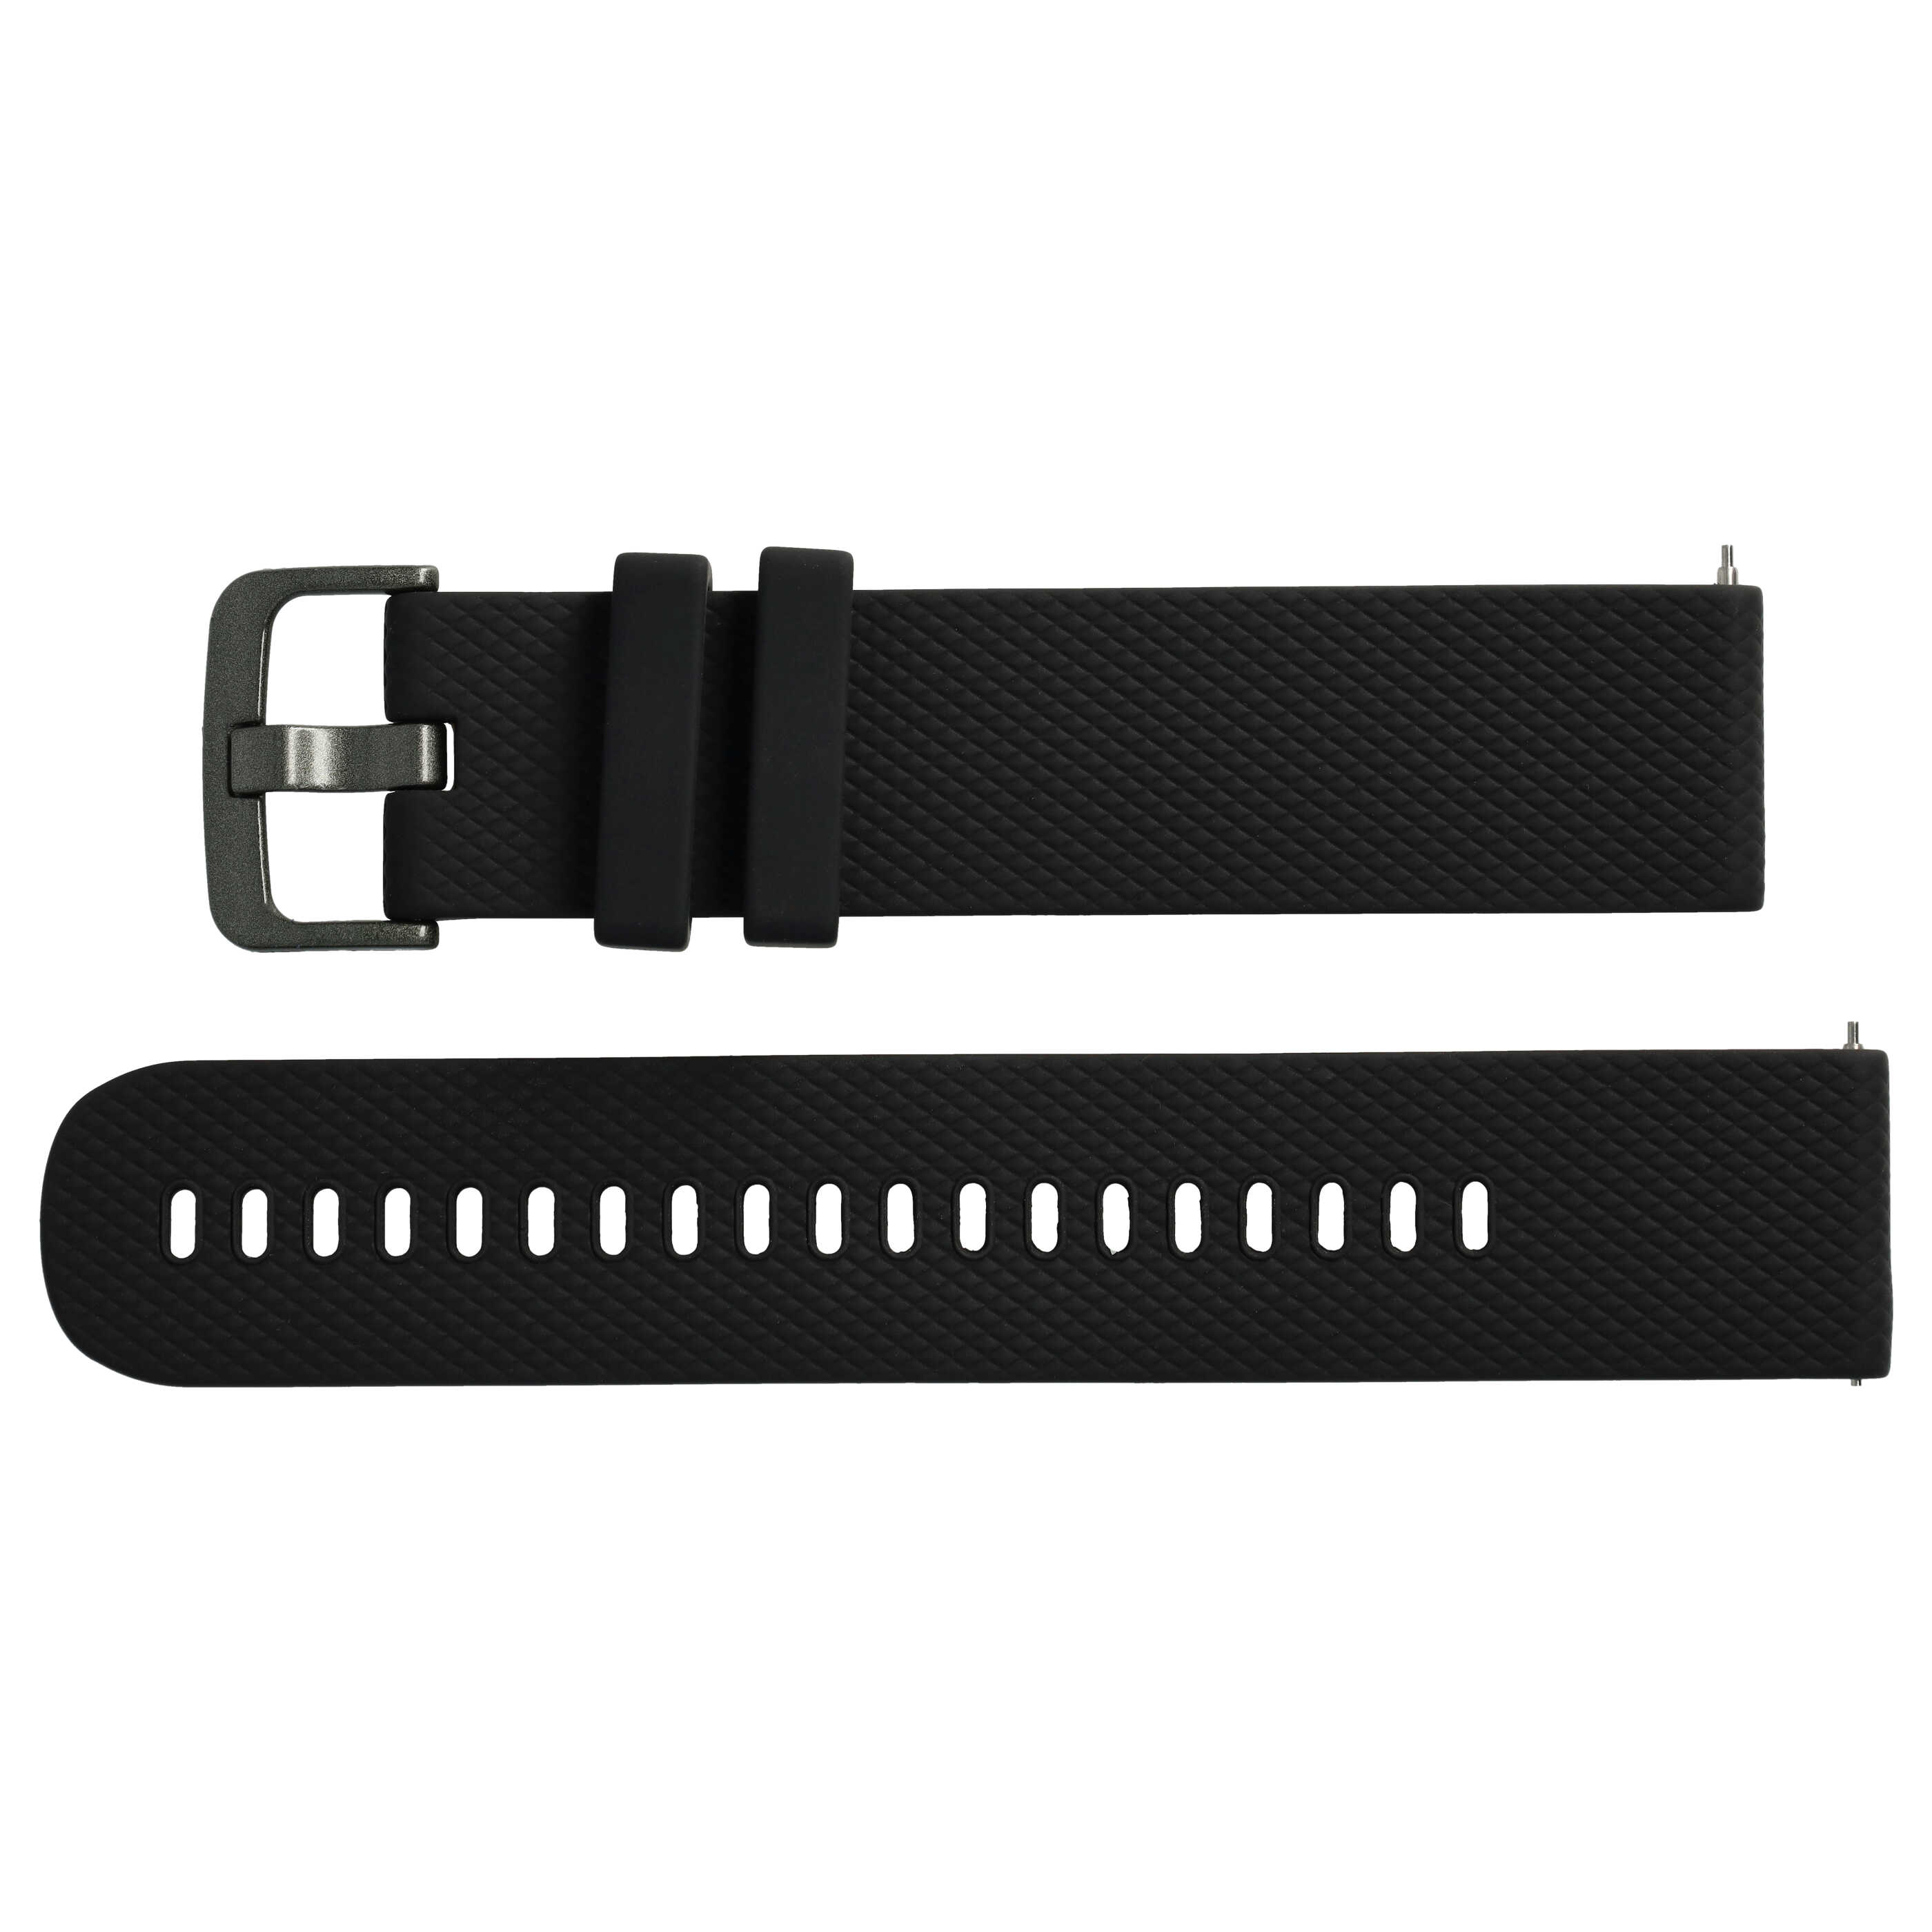 Armband L für Samsung Galaxy Watch Smartwatch - Bis 270 mm Gelenkumfang, Silikon, schwarz